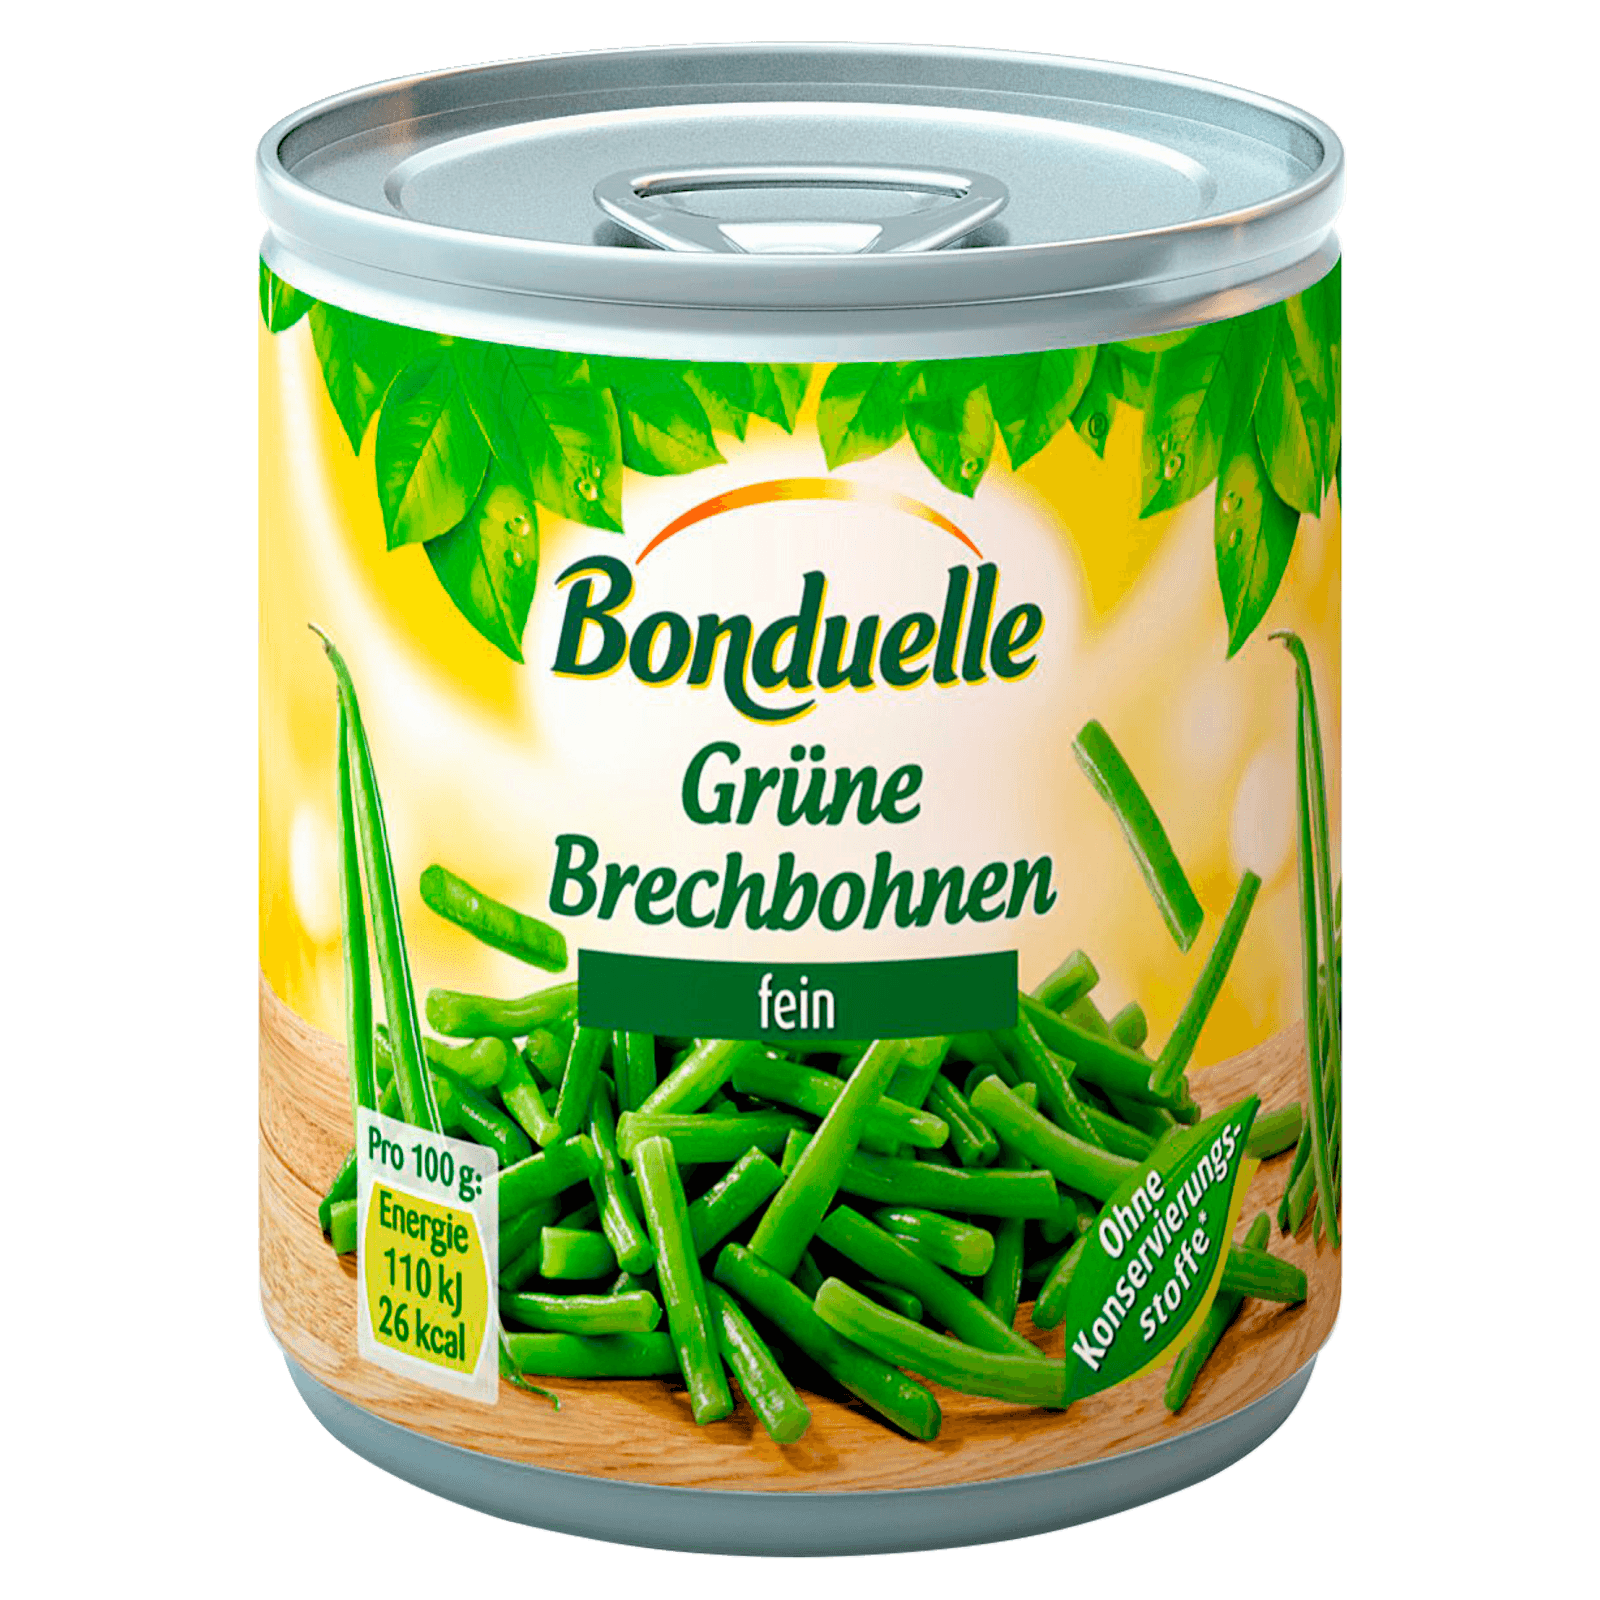 Bonduelle Grüne Brechbohnen fein 110g bei REWE online bestellen!